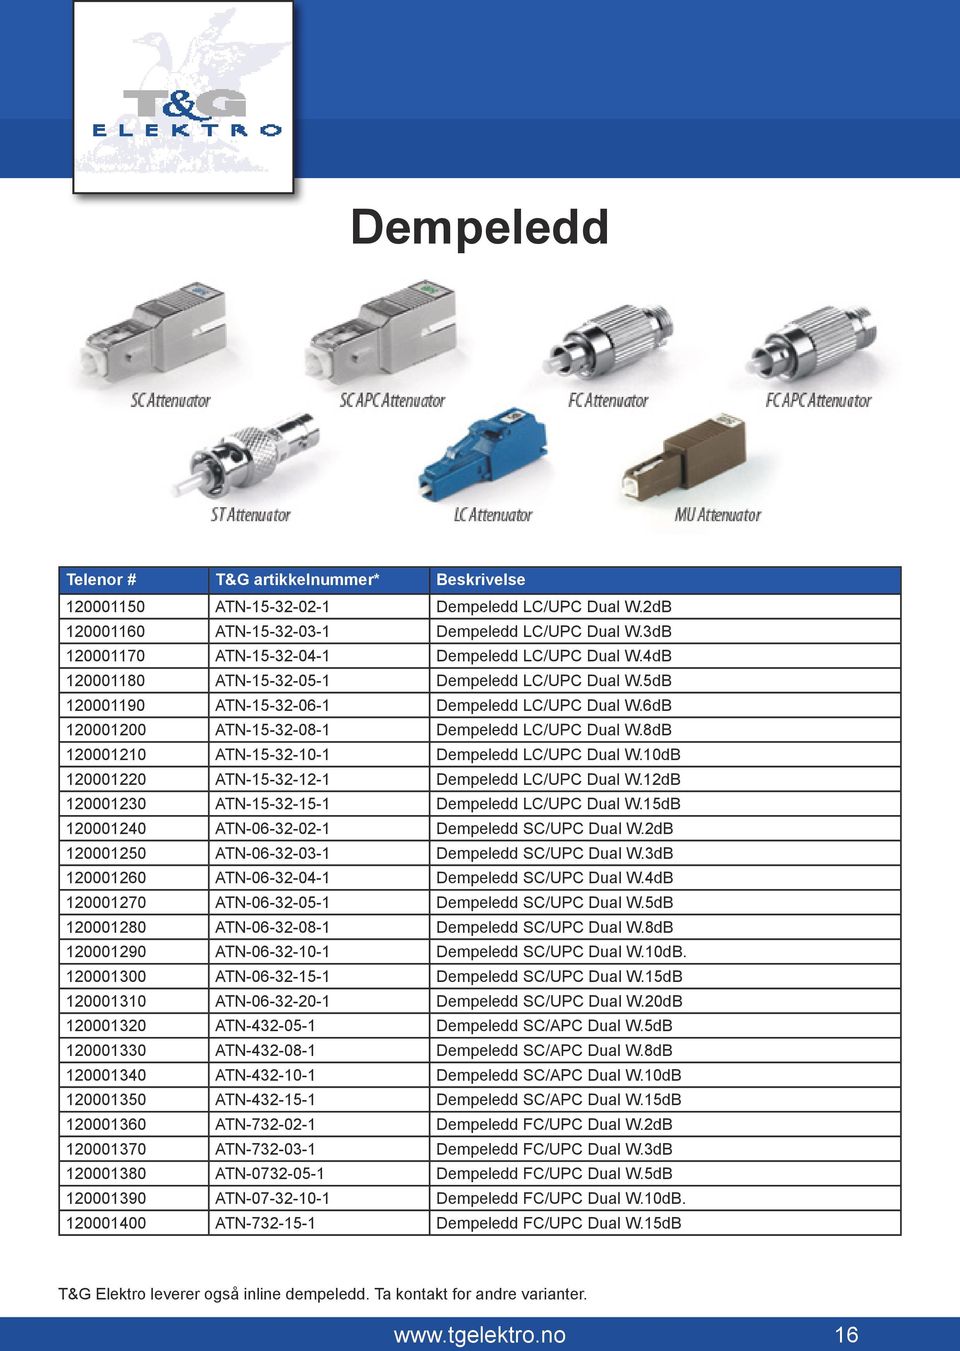 8dB 120001210 ATN-15-32-10-1 Dempeledd LC/UPC Dual W.10dB 120001220 ATN-15-32-12-1 Dempeledd LC/UPC Dual W.12dB 120001230 ATN-15-32-15-1 Dempeledd LC/UPC Dual W.